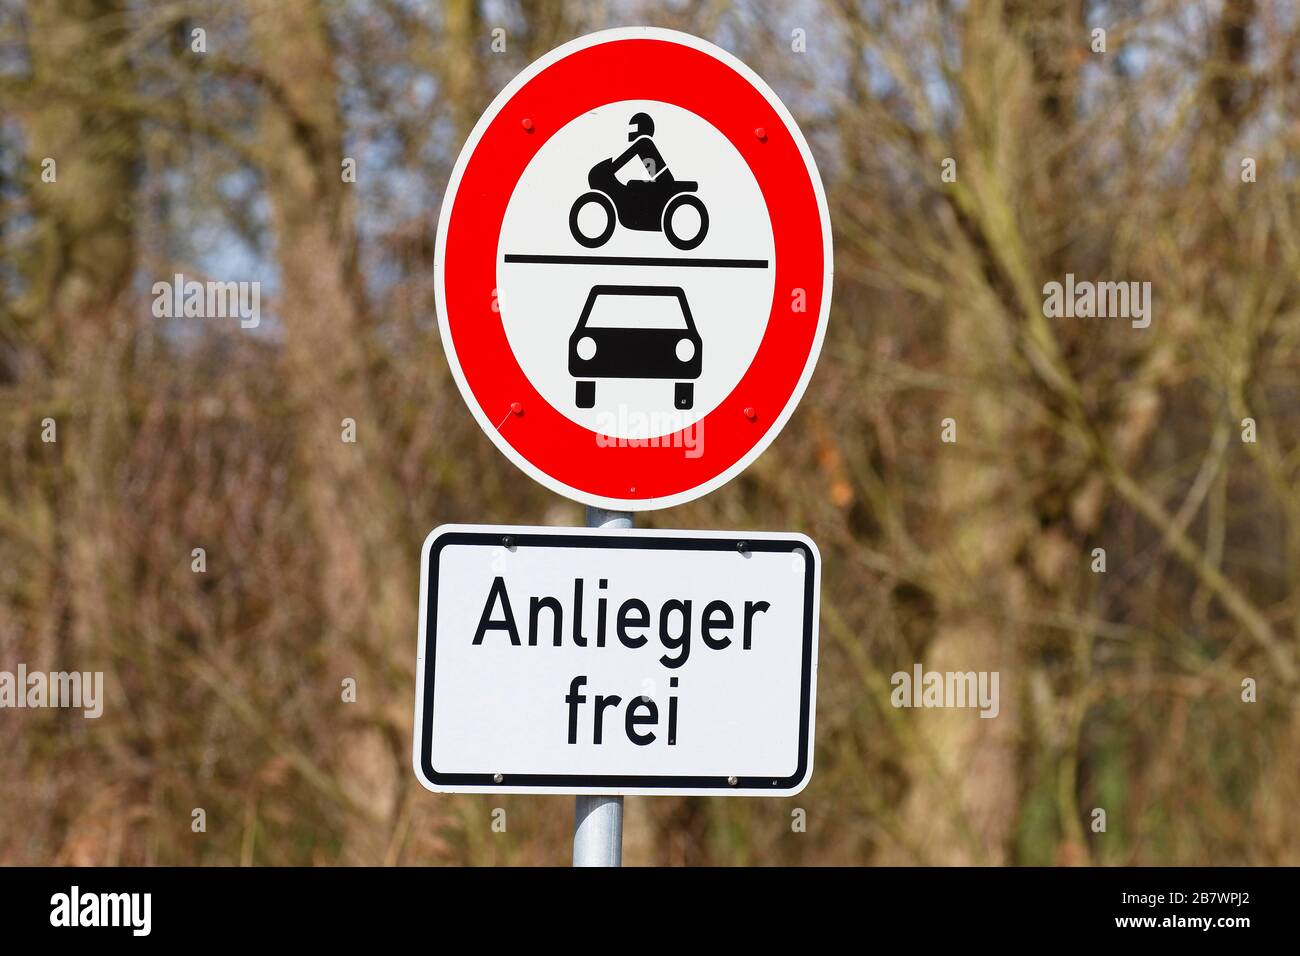 Les résidents des panneaux de signalisation sont libres, l'accès à des véhicules non autorisés tels que les motocyclettes et les voitures est interdit, Schleswig-Holstein, Allemagne Banque D'Images